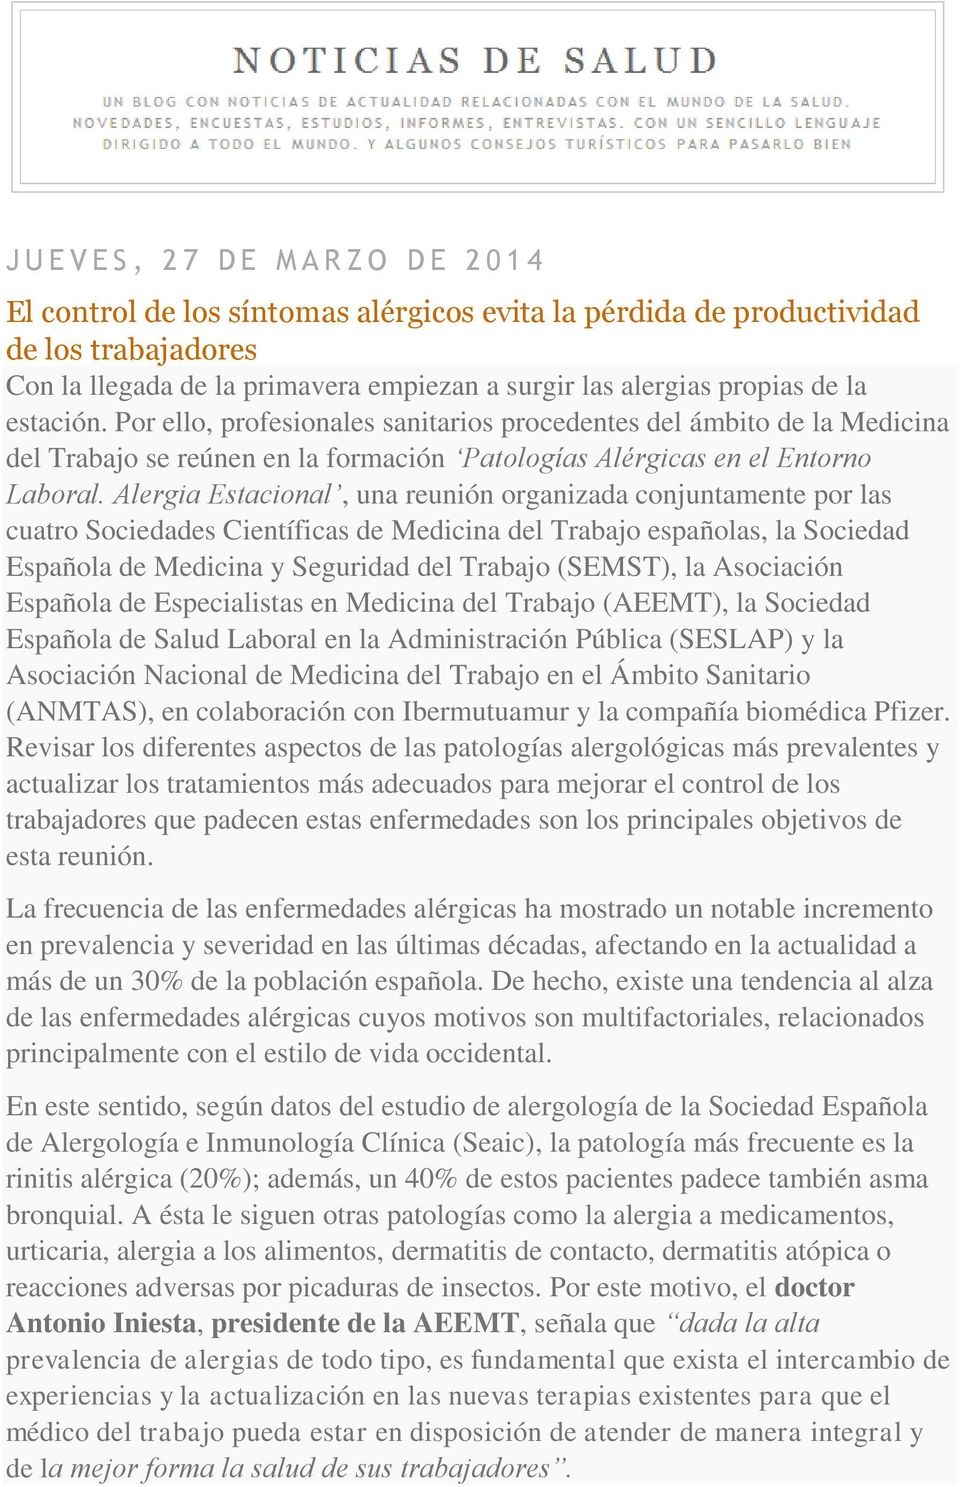 Alergia Estacional, una reunión organizada conjuntamente por las cuatro Sociedades Científicas de Medicina del Trabajo españolas, la Sociedad Española de Medicina y Seguridad del Trabajo (SEMST), la